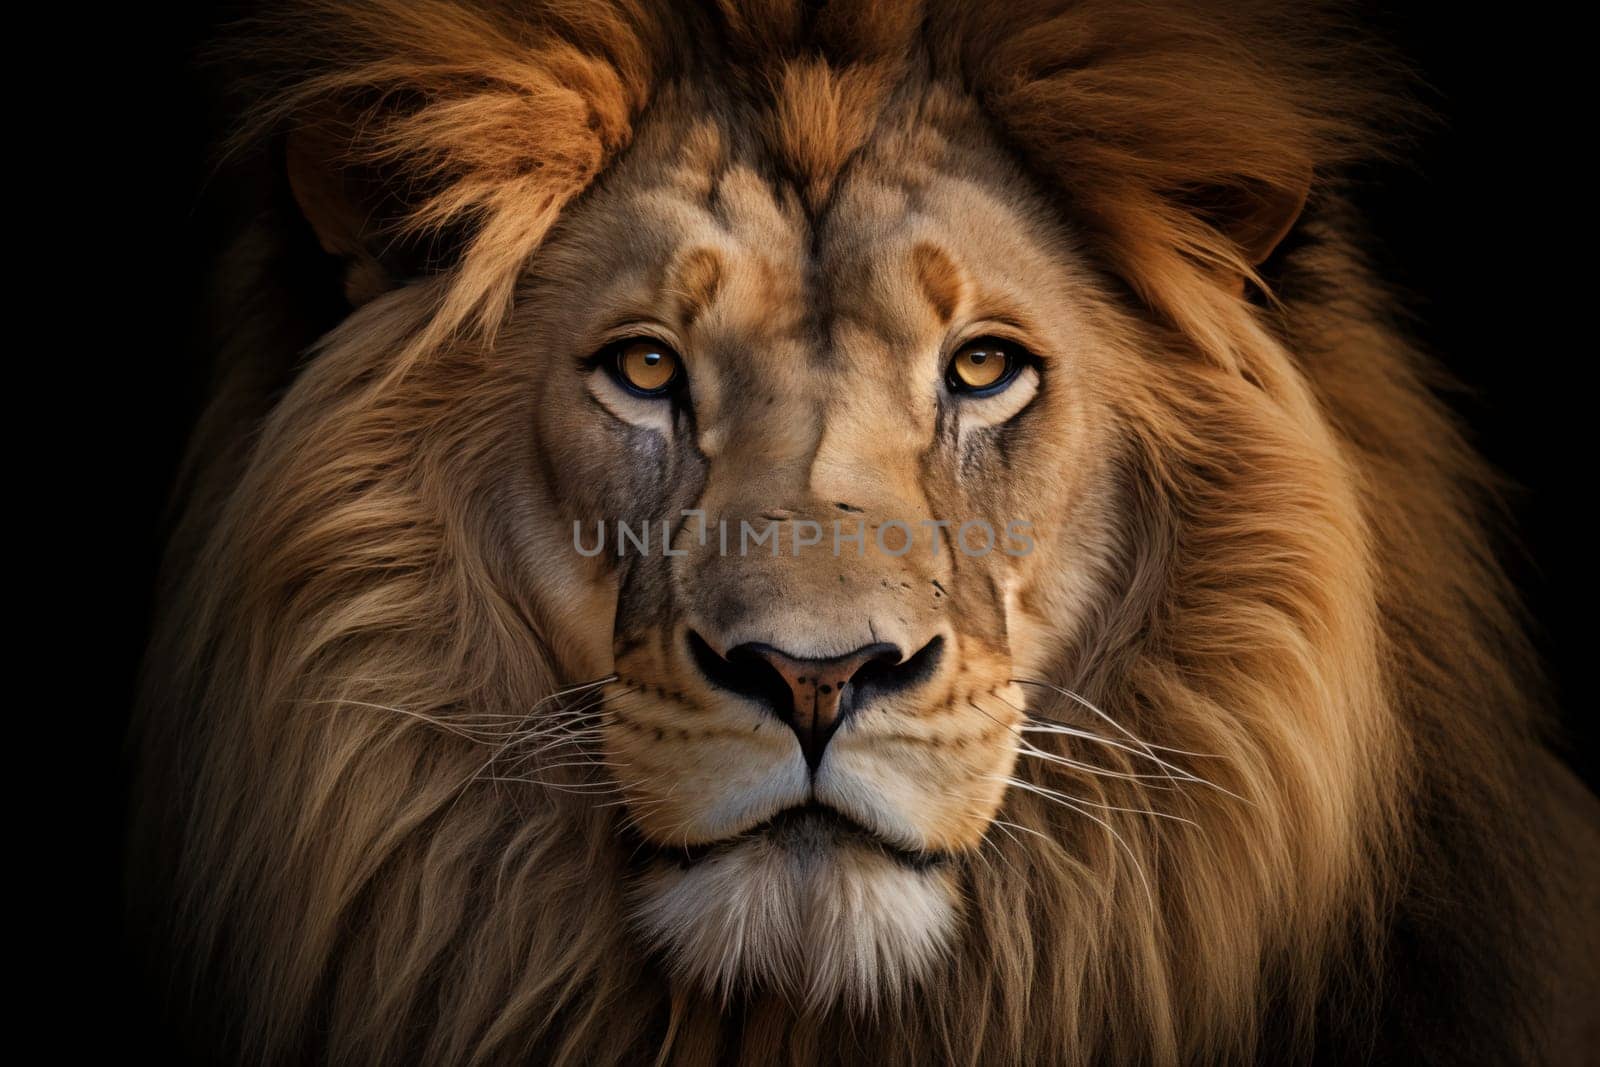 Majestic Lion Portrait on Dark Background by dimol